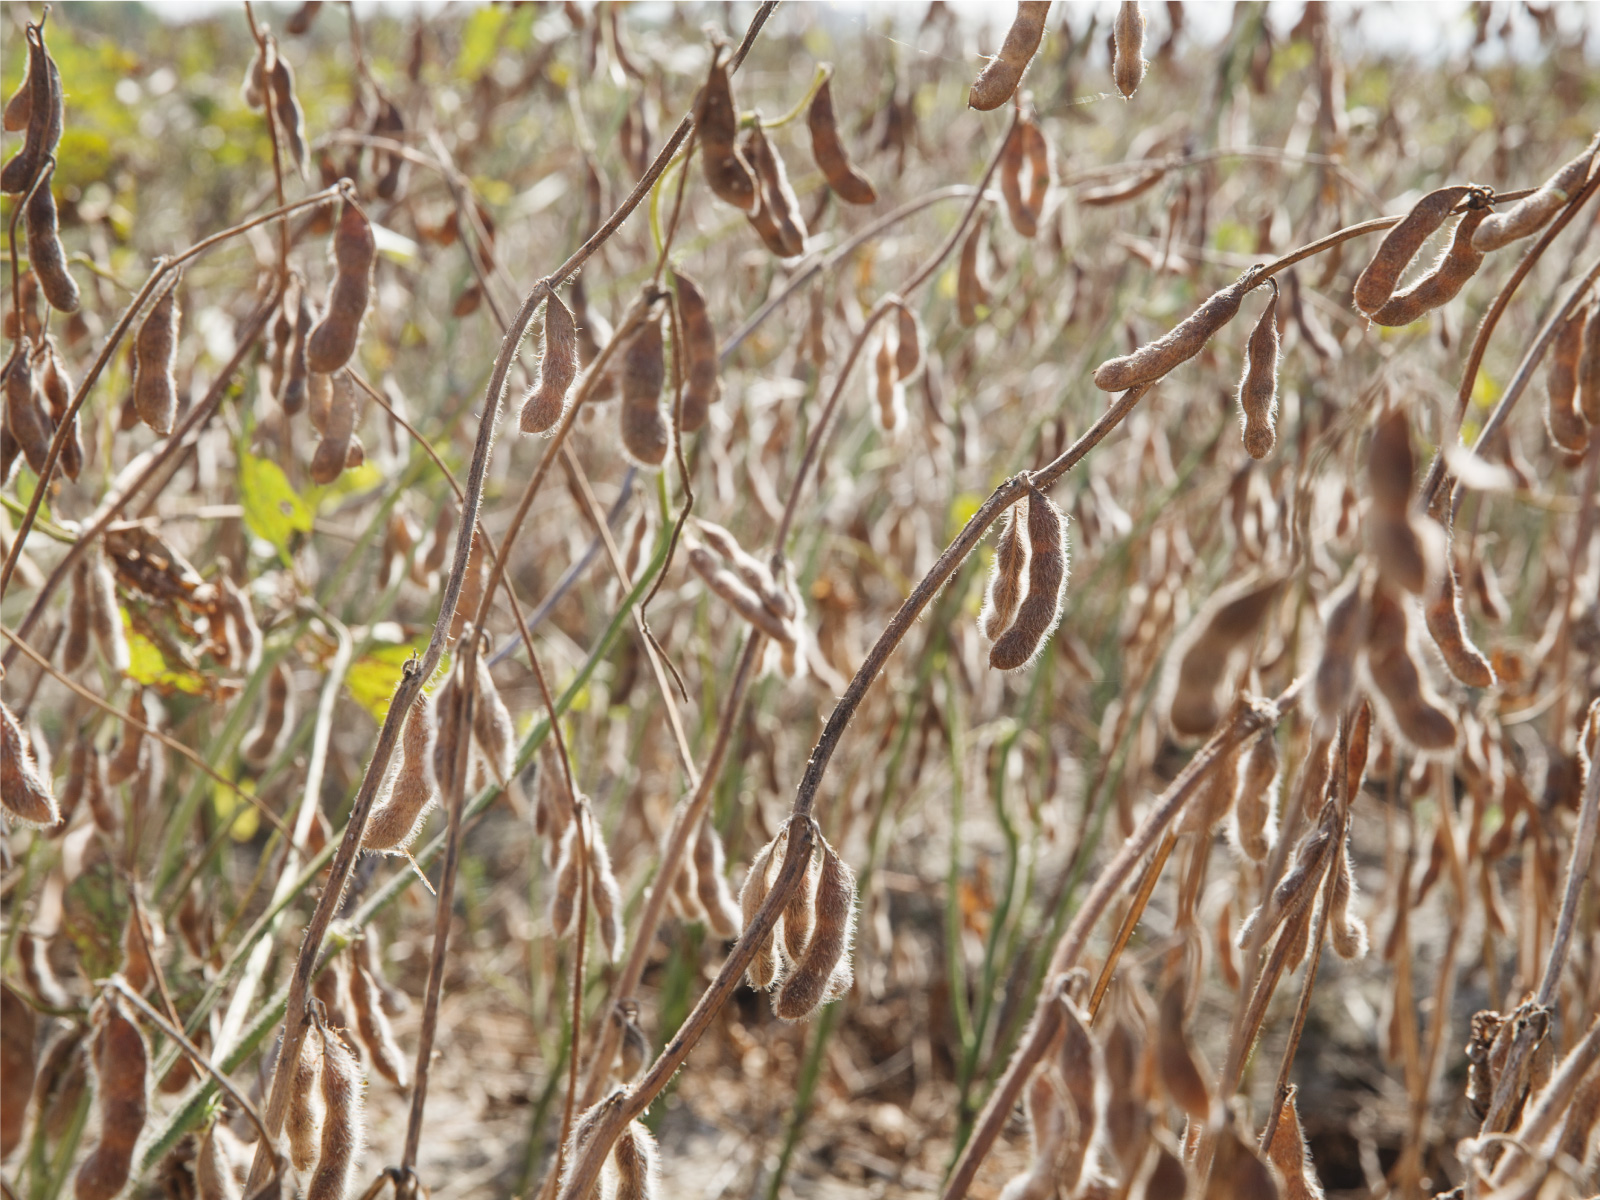 禾乃川使用碳足跡盤查認證之國產大豆原料。以不曾停止嘗試可減少碳排又可提供美味健康飲食的方法，所以無論如何都堅持使用本地小農以友善農法栽種、低交通運送碳排、透明可溯源的100%台灣國產豆為原料，這是對土地永續的重視，更是禾乃川產品永續的價值。 | 改變生命的豆漿店 | 禾乃川國產豆製所